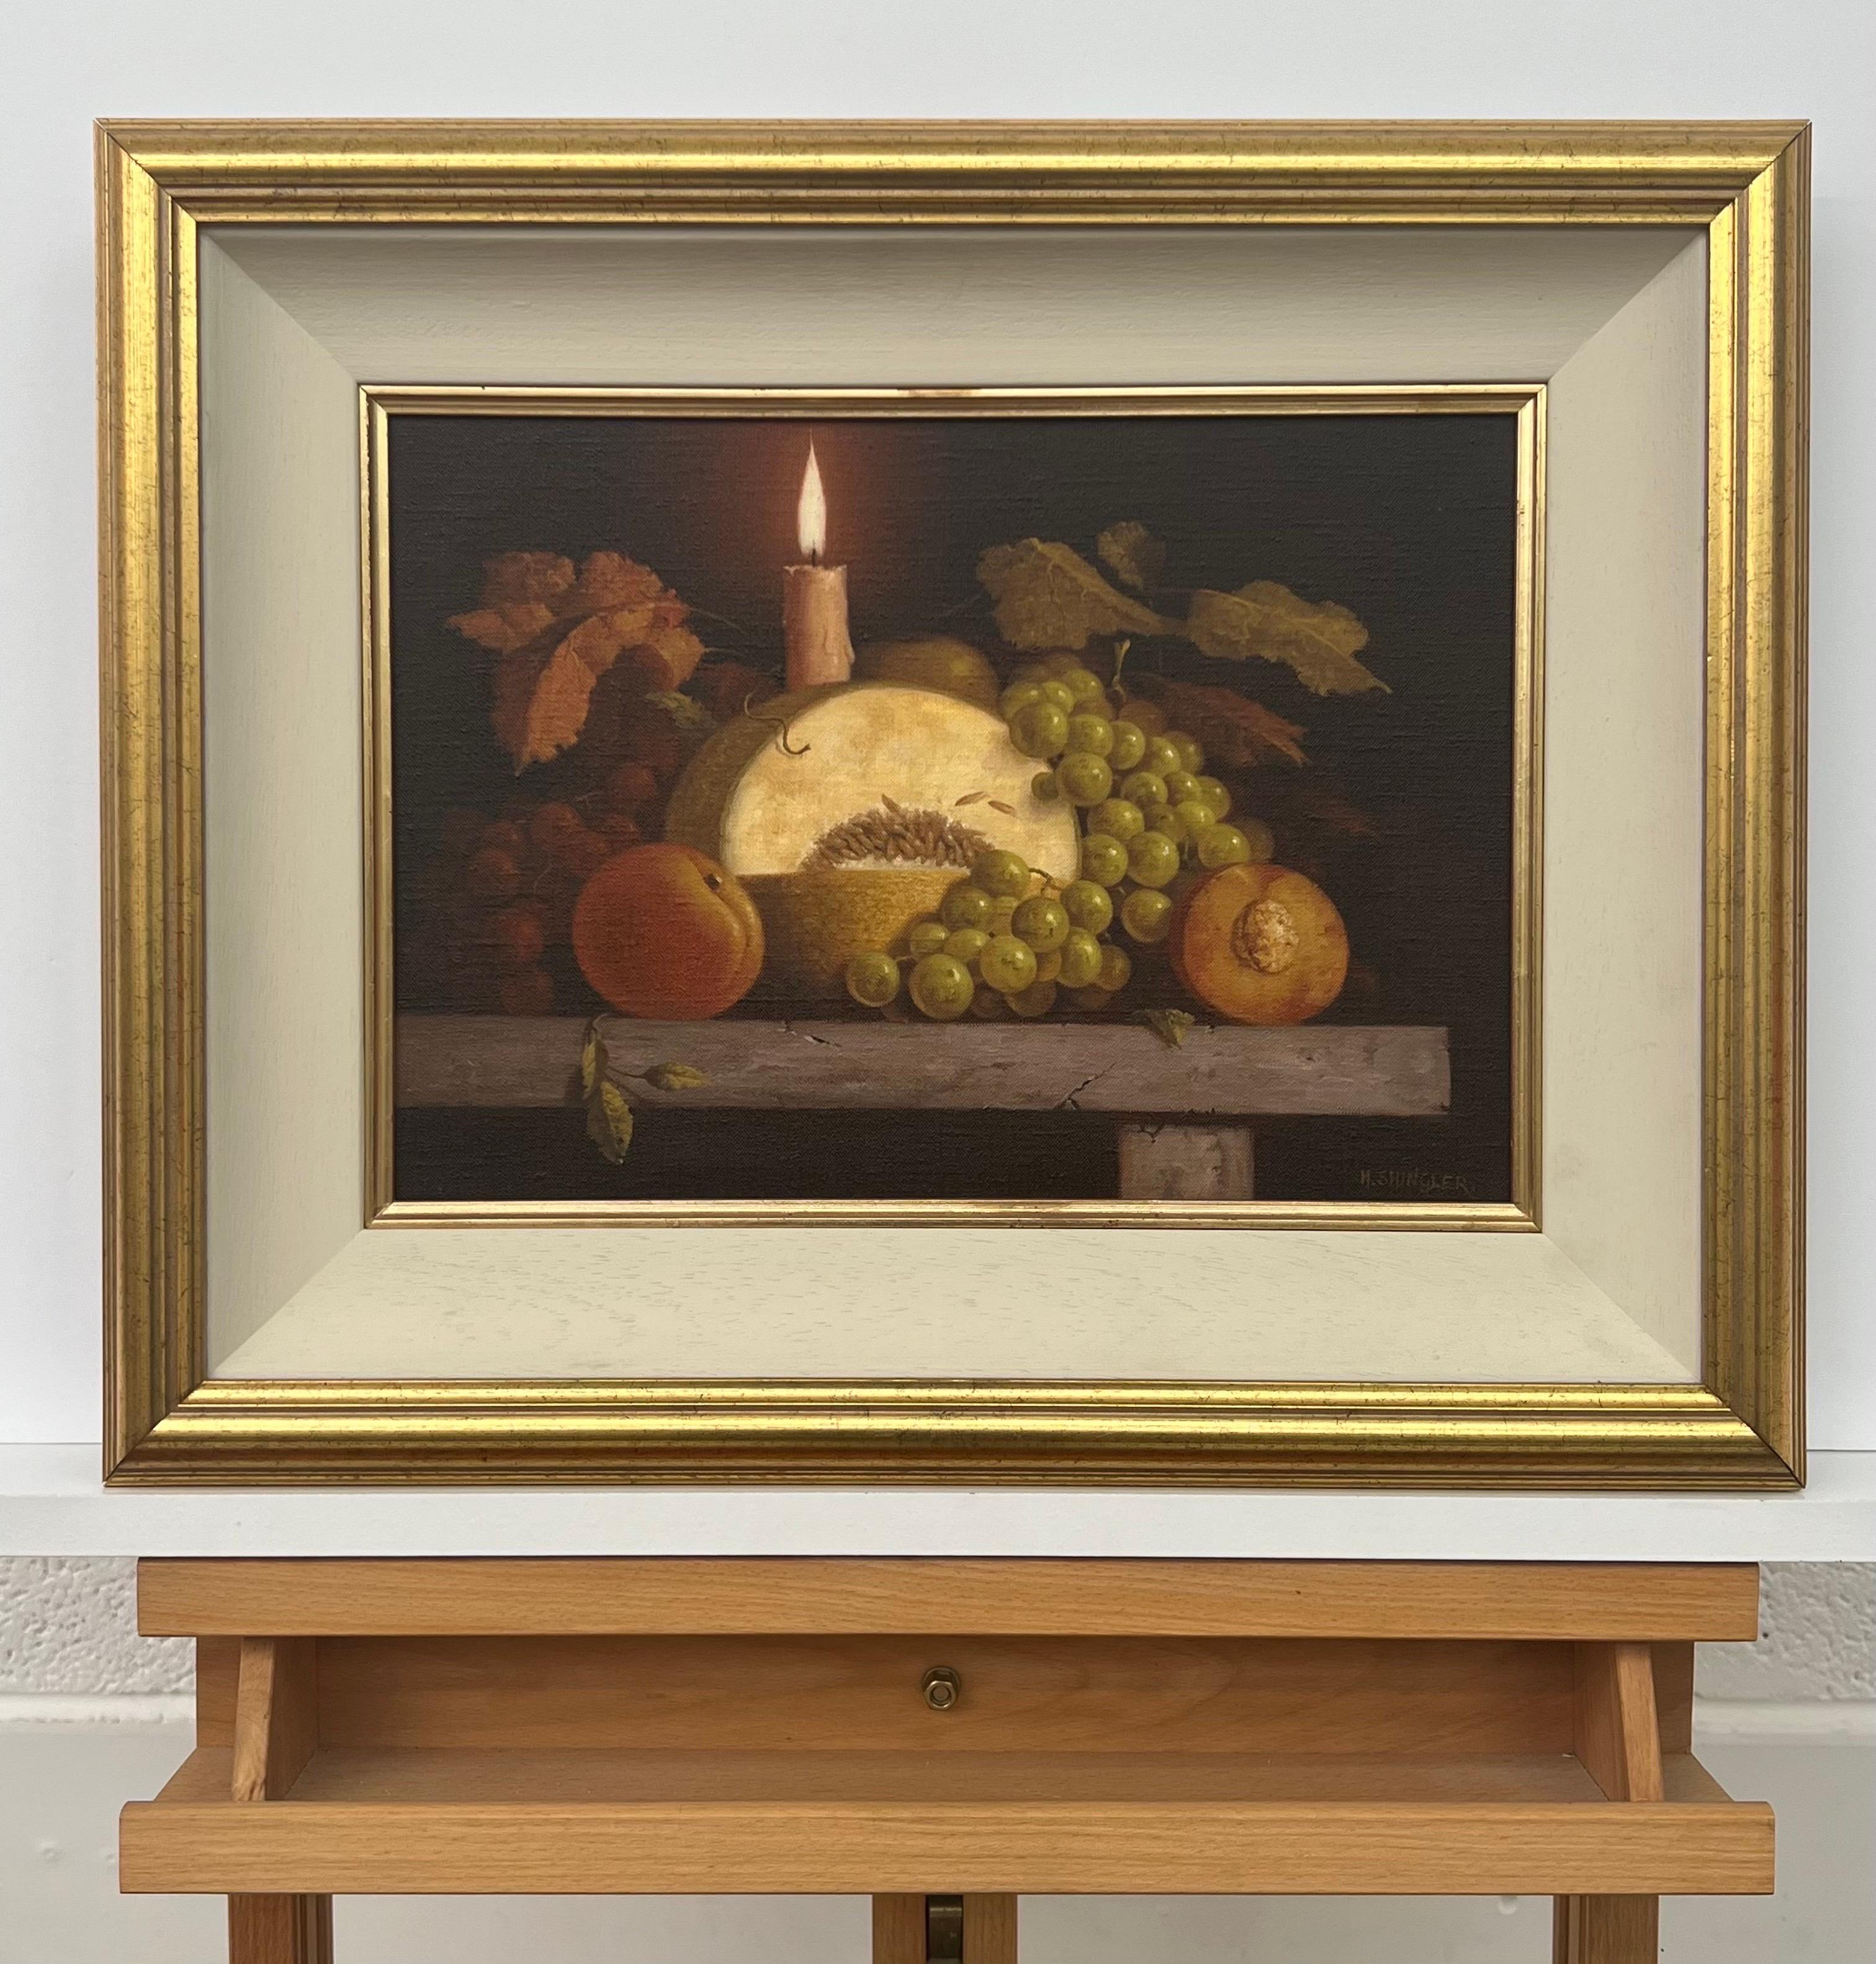 Nature morte d'intérieur traditionnelle, peinture à l'huile de fruits et de bougies par un artiste britannique - Réalisme Painting par Howard Shingler